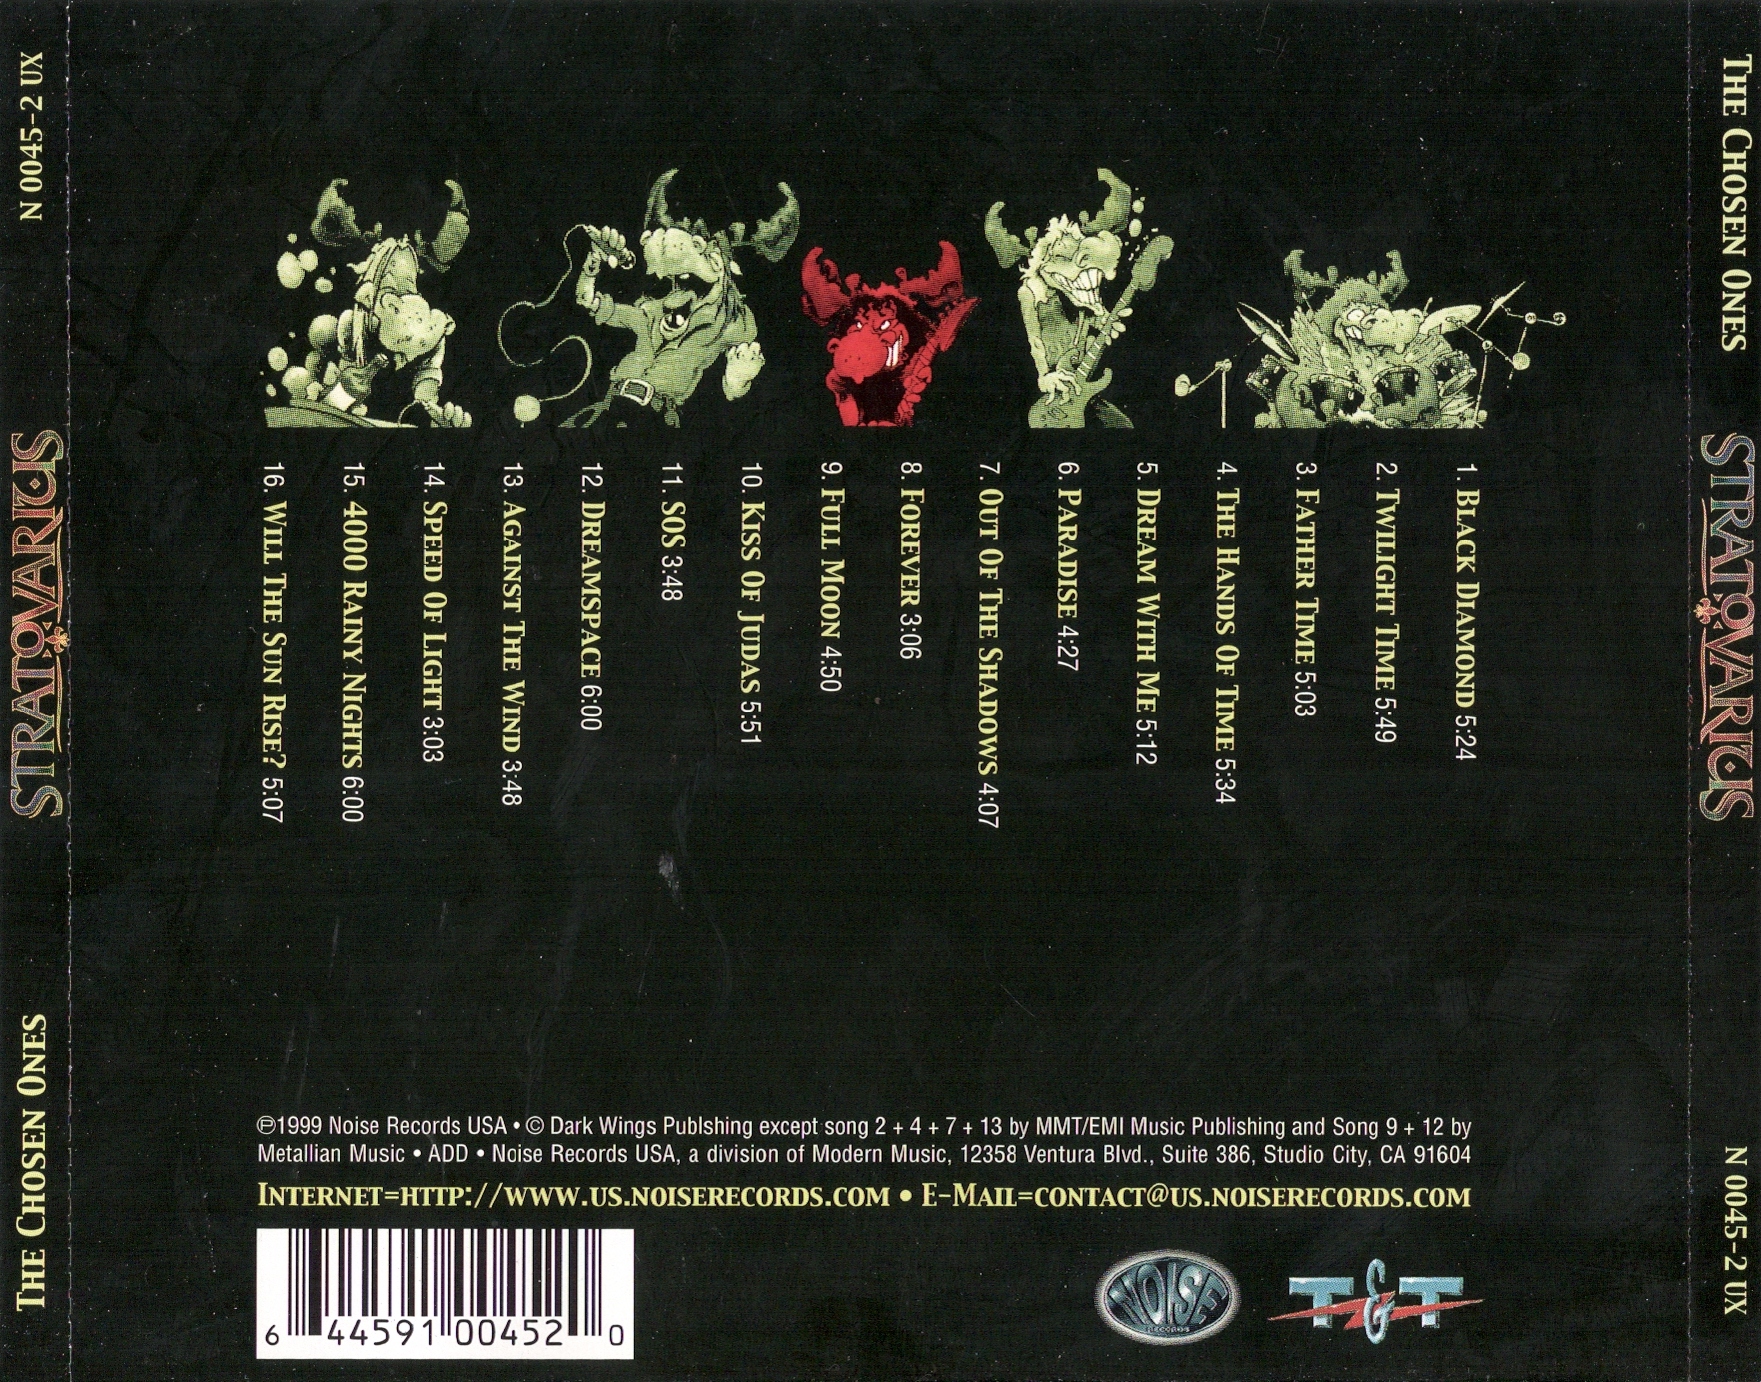 STRATOVARIUS The Chosen Ones 1999 (CD album) (102113921) 